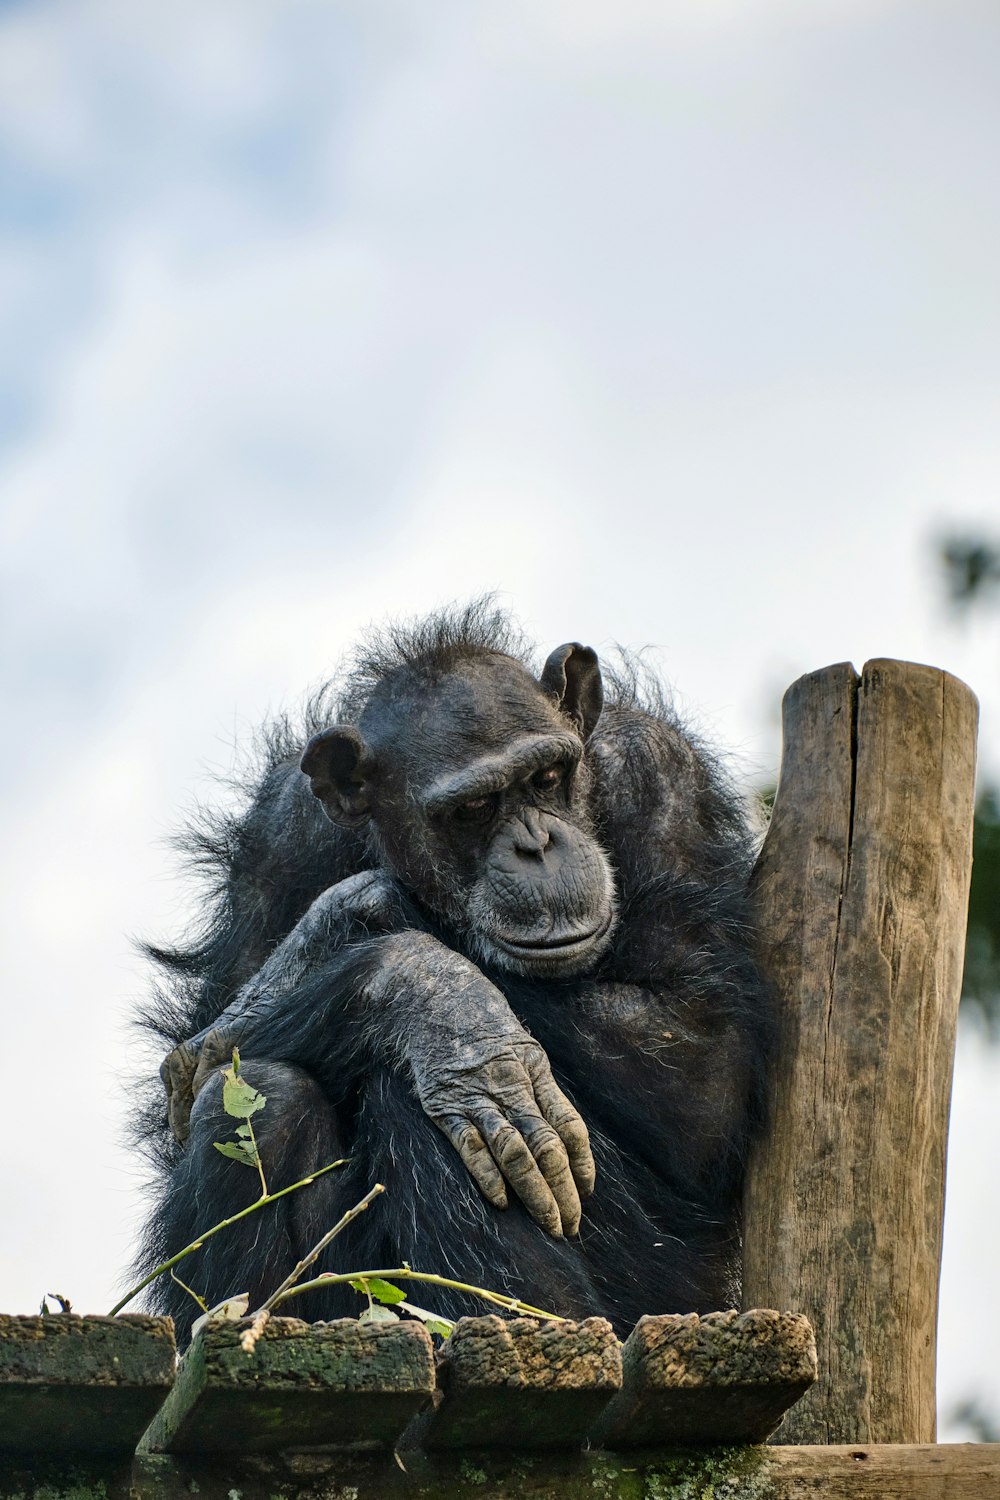 a gorilla sitting on a log